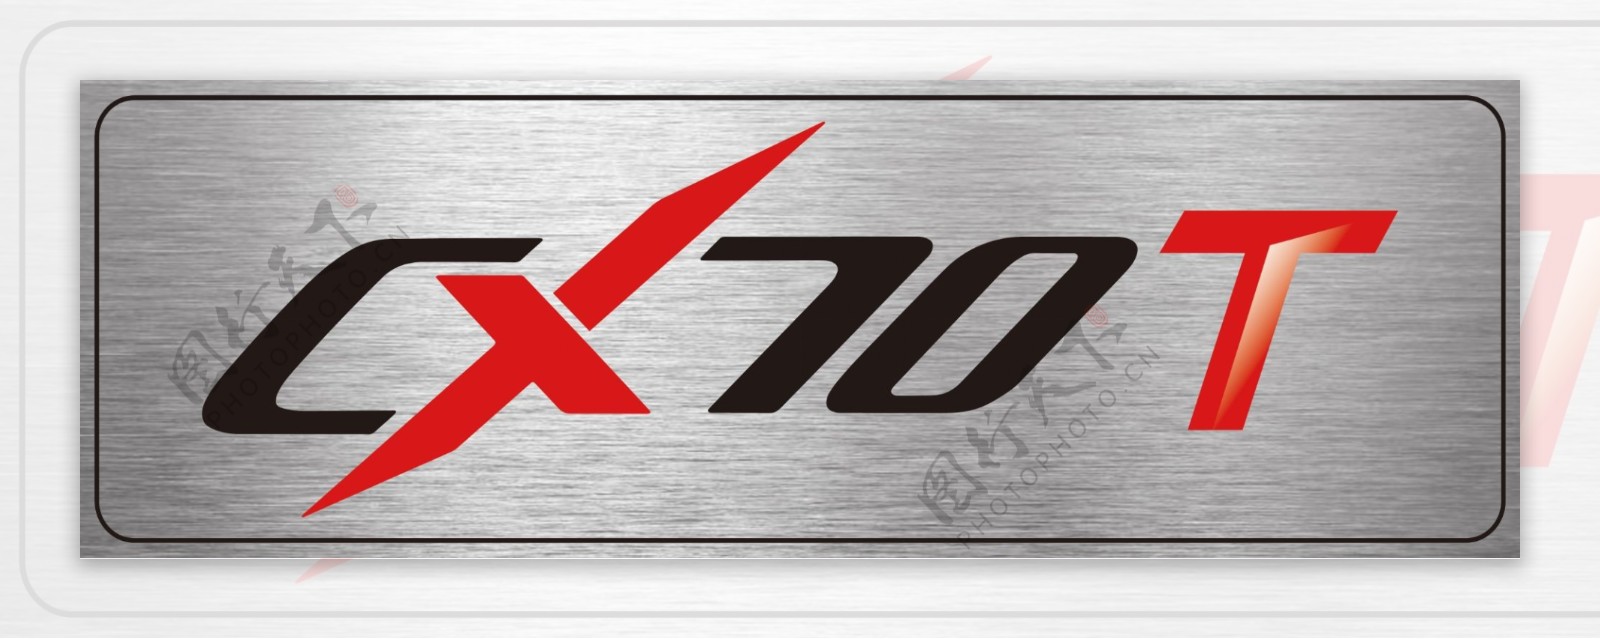 CX70T车铭牌